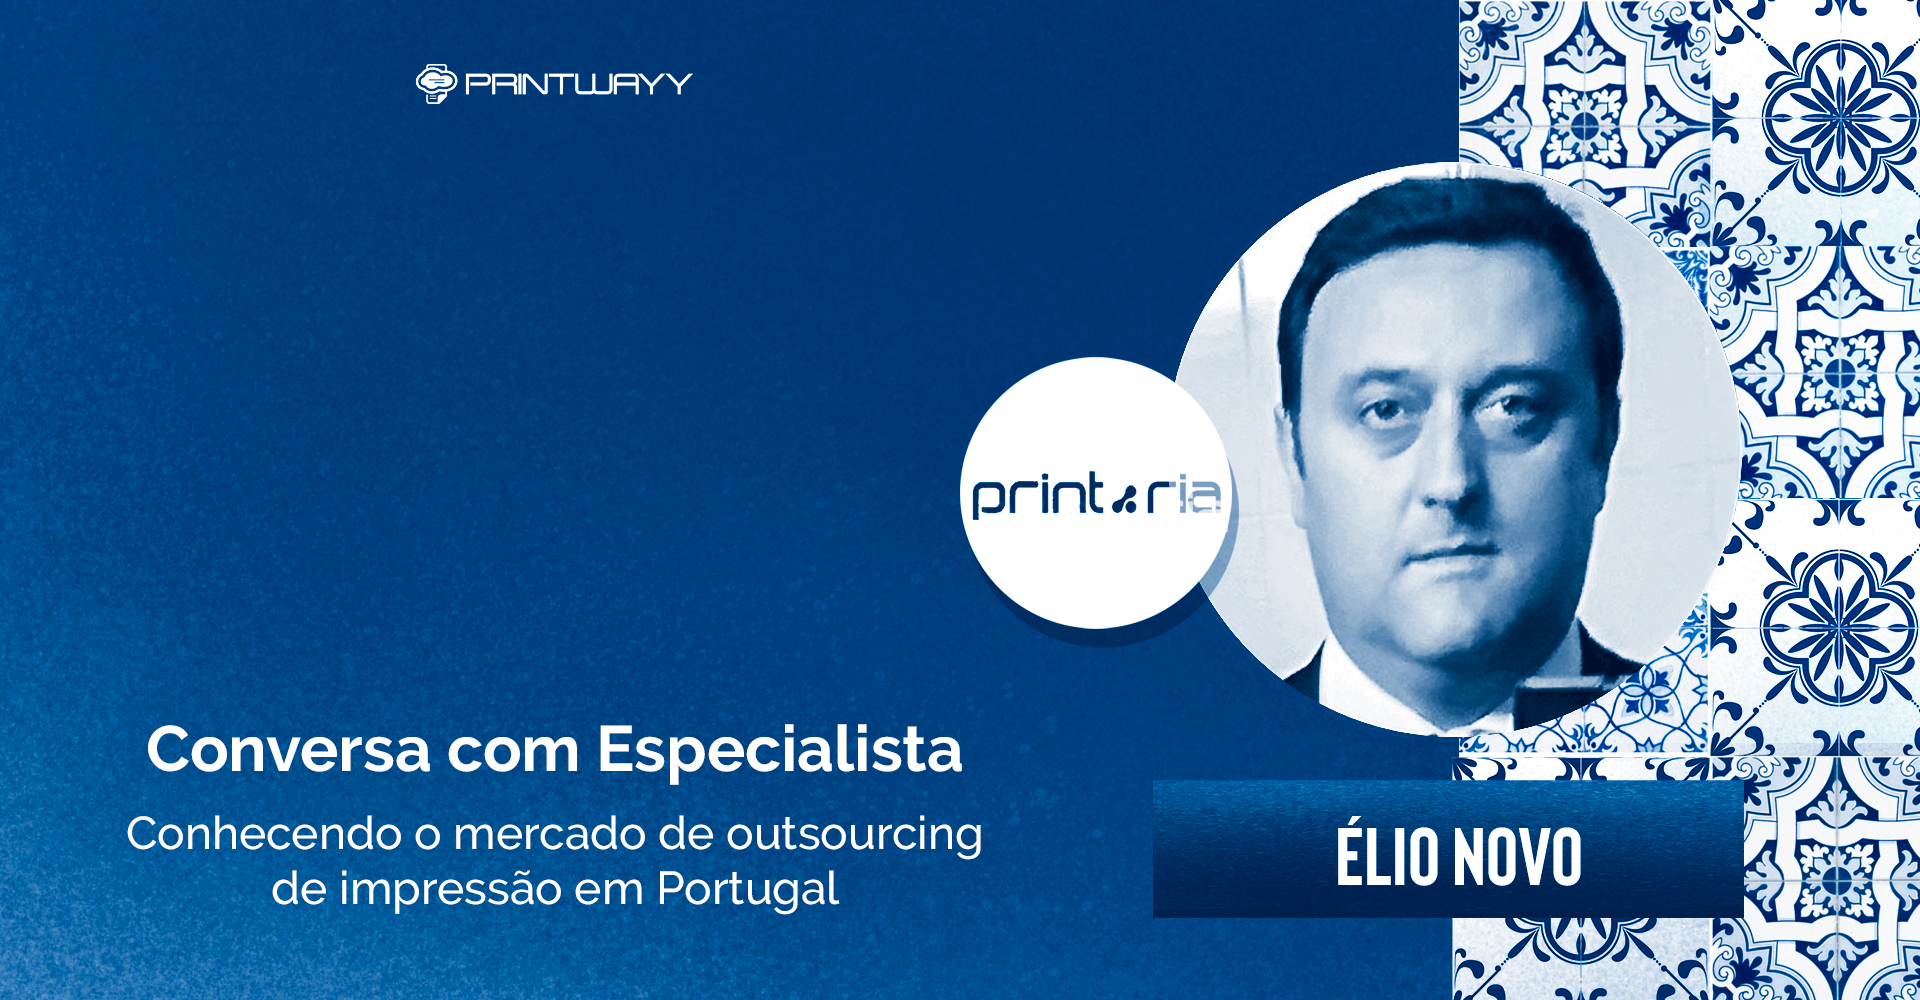 Fotografia de Élio Novo, logotipo da PrintRia e azulejos portugueses ao fundo. A imagem representa o outsourcing de impressão em Portugal.